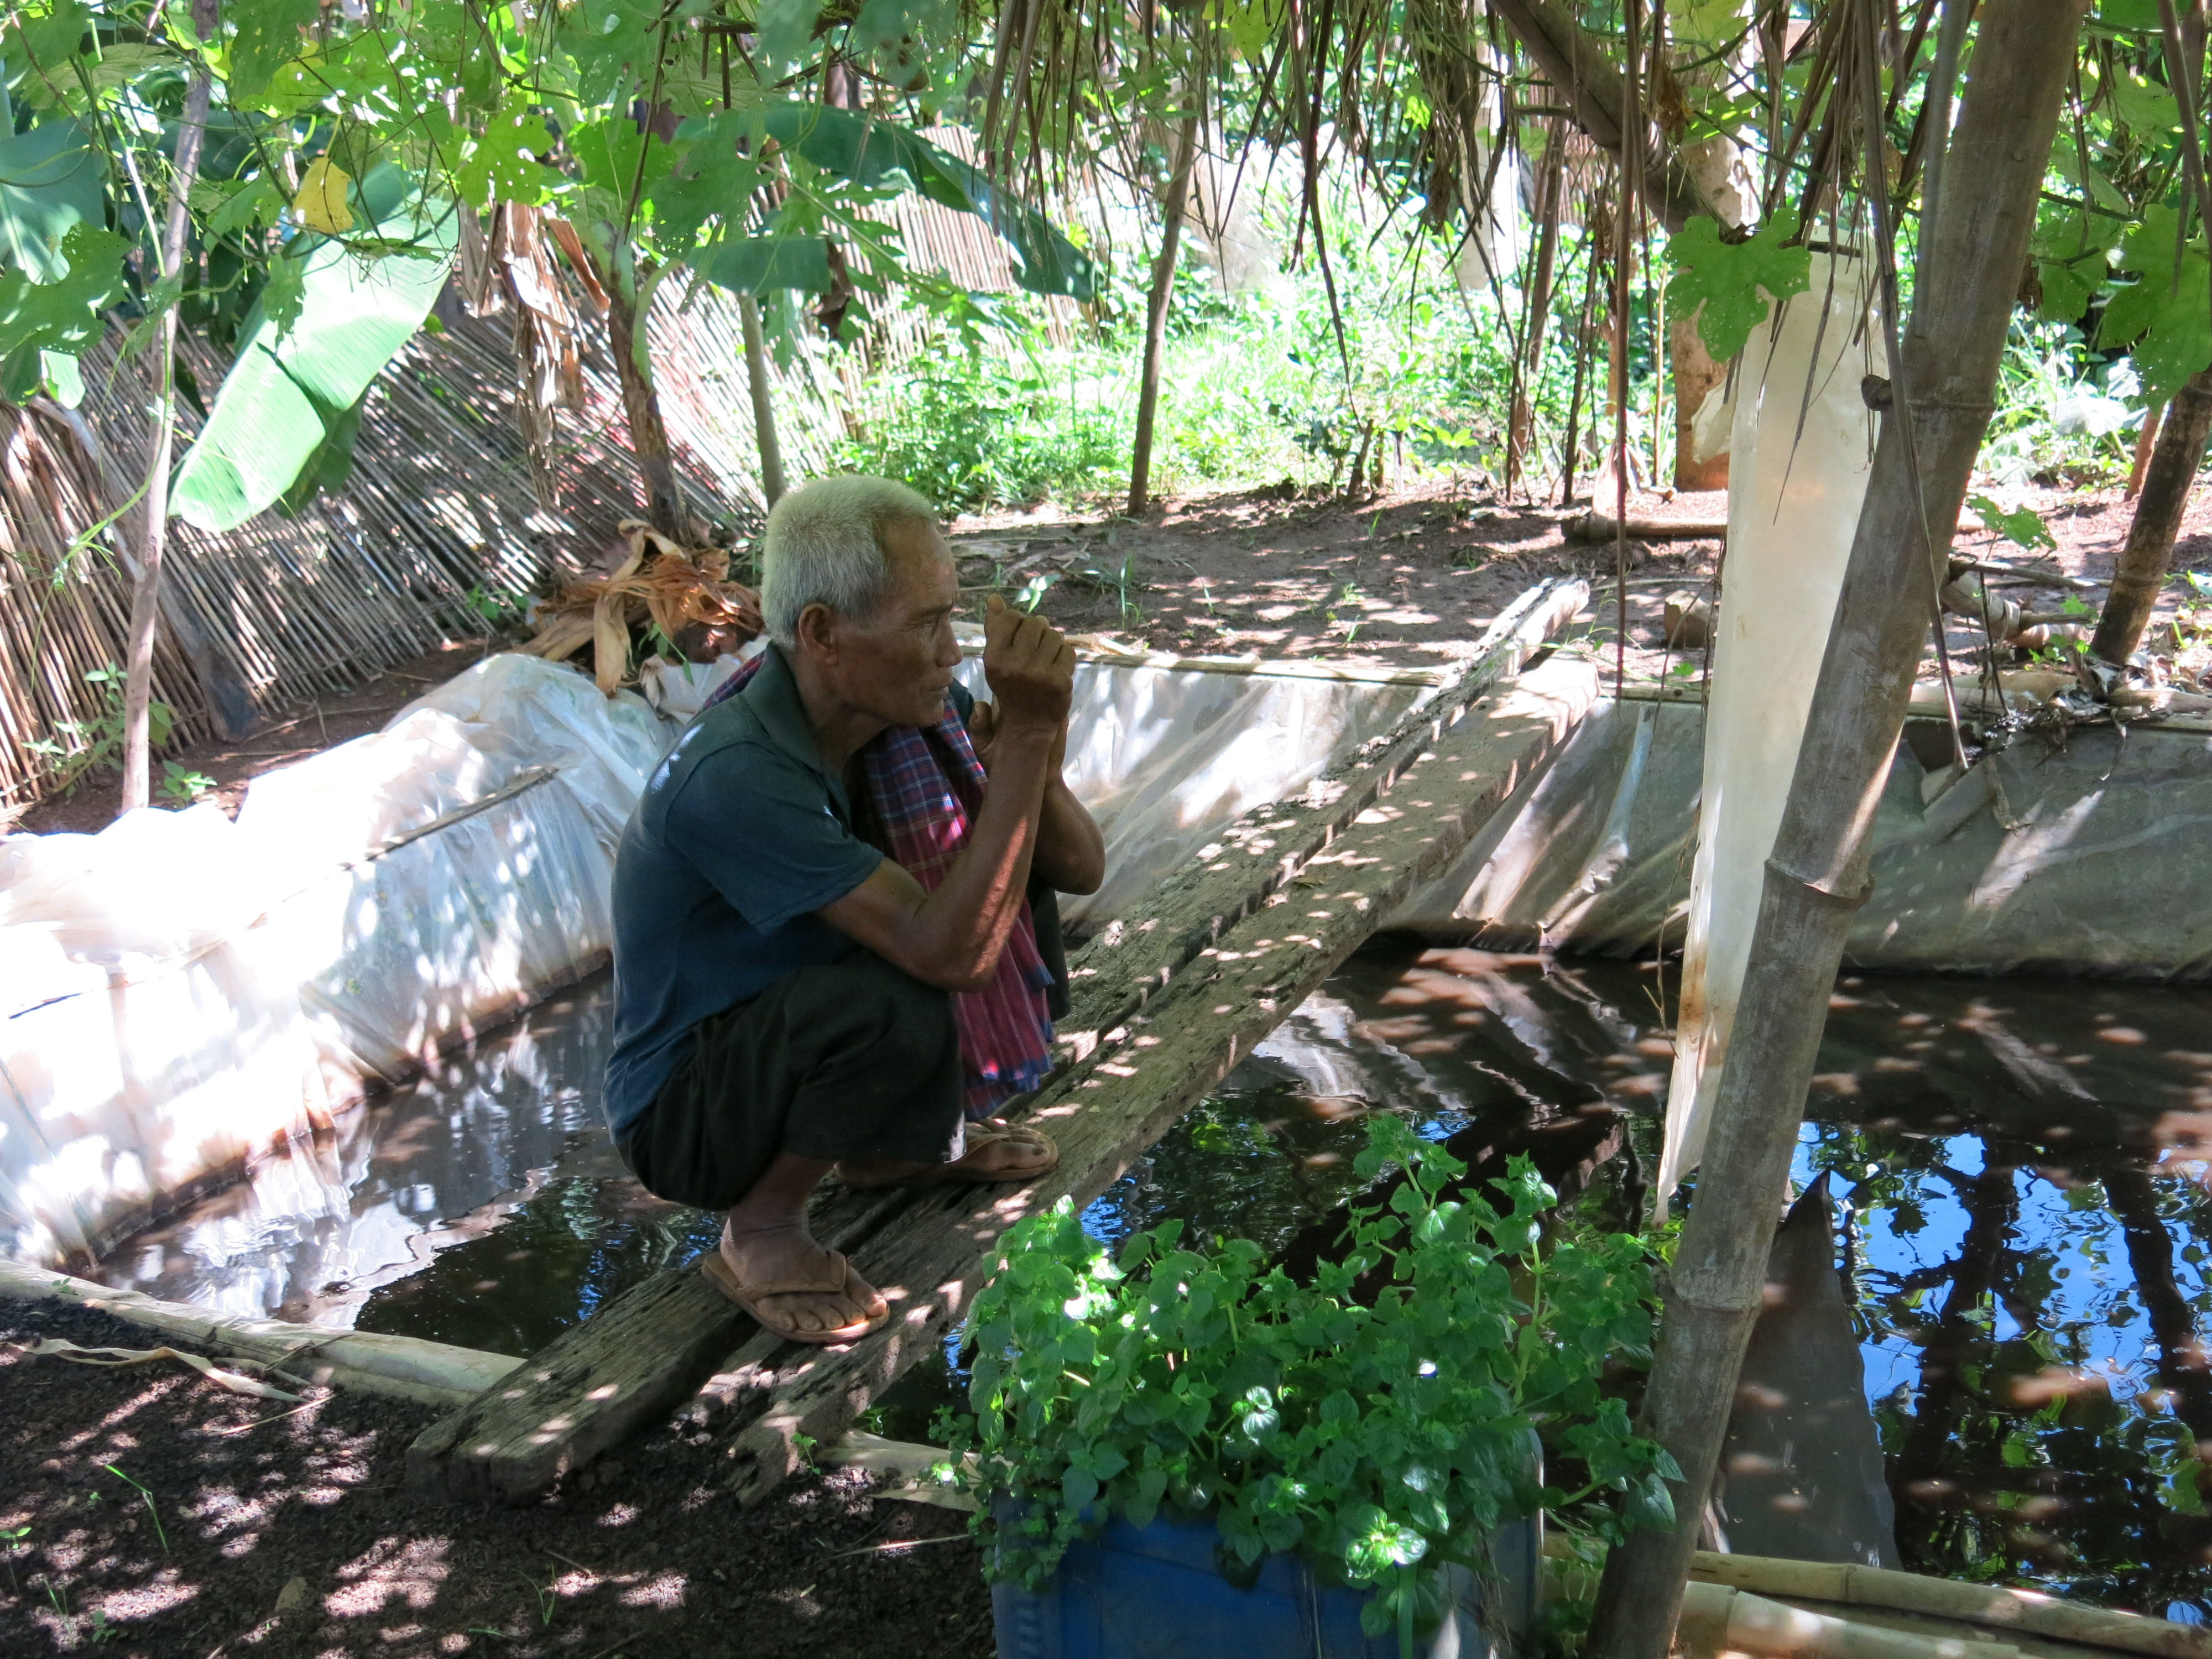 Kissakalojen kasvatusta Sao Loeun kylässä Kampong Thomissa. Kaloista ihmiset saavat terveydelle tärkeitä proteiineja ja hivenaineita. Kissakaloille kelpaavat ravinnoksi esim. termiitit